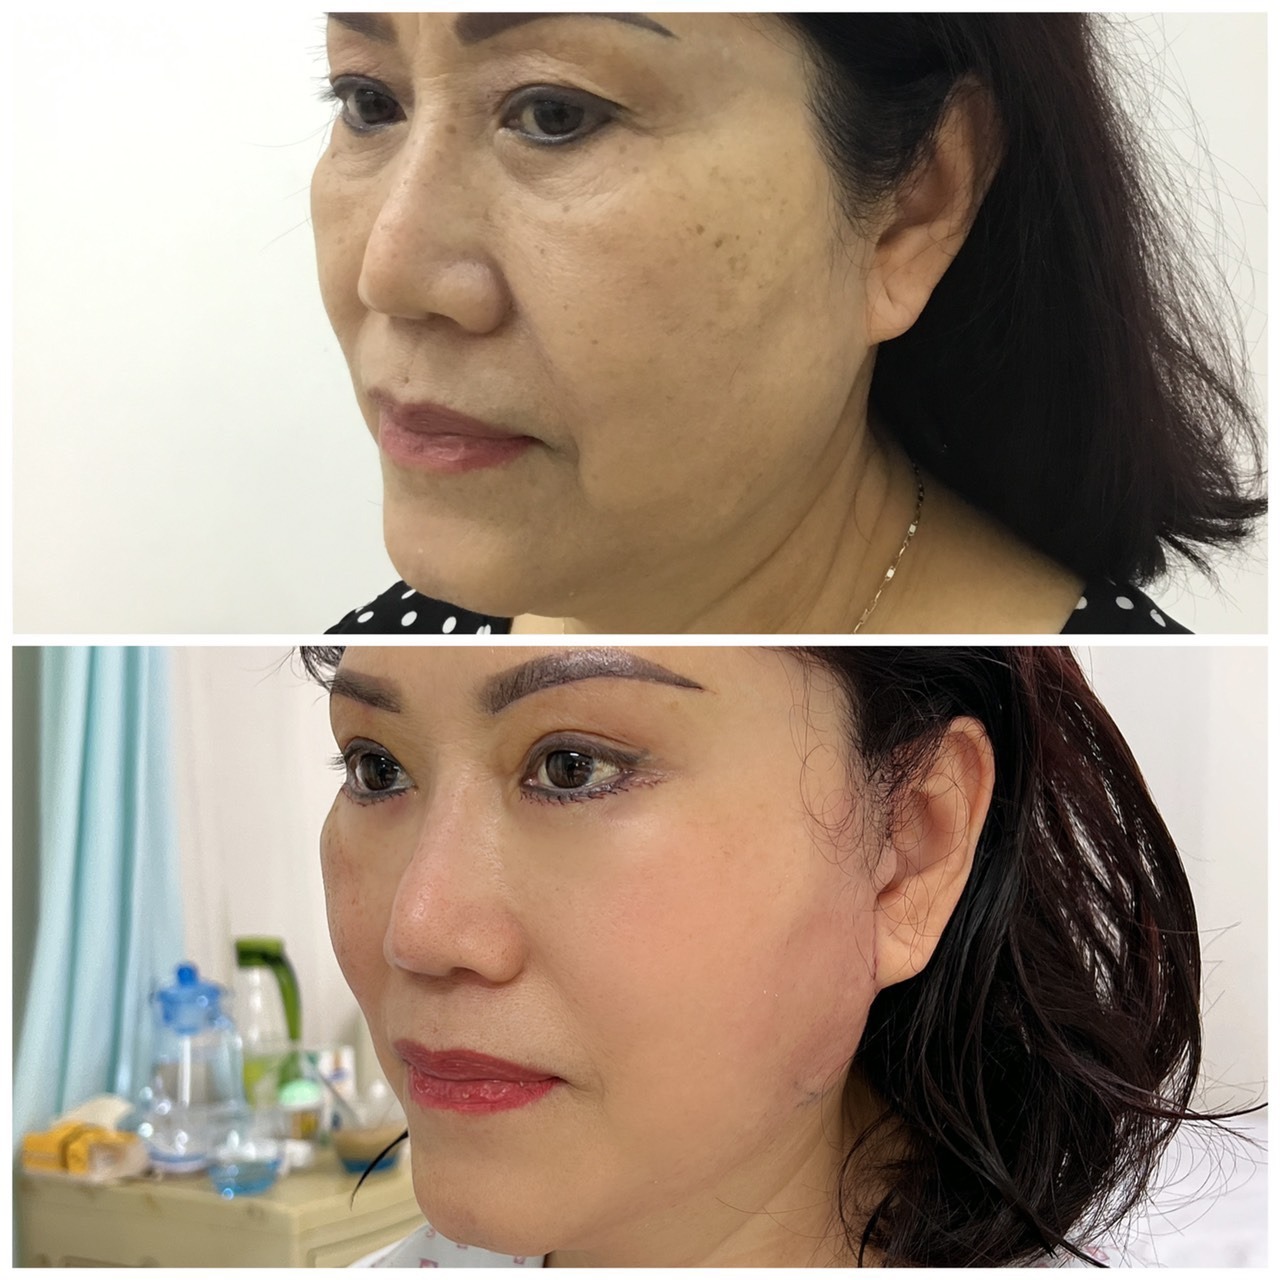 Chăm sóc sau phẫu thuật căng da mặt như thế nào để có kết quả đẹp và an toàn